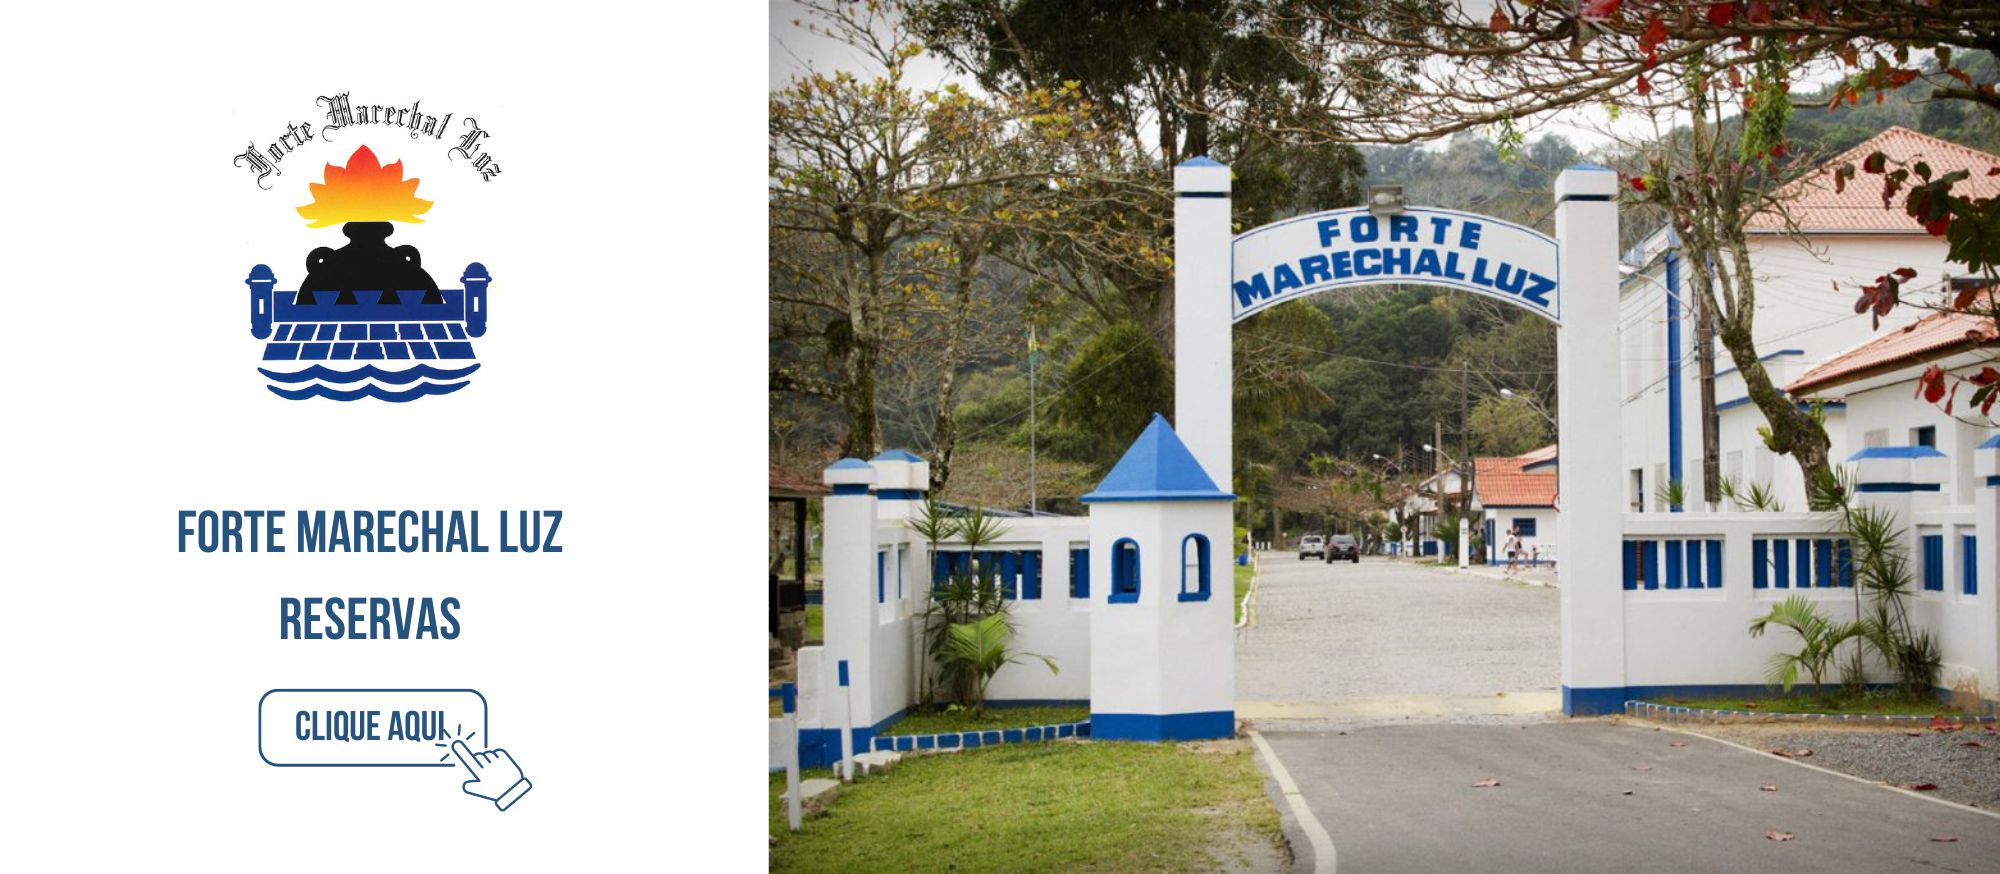 Reservas do Forte Marechal Luz